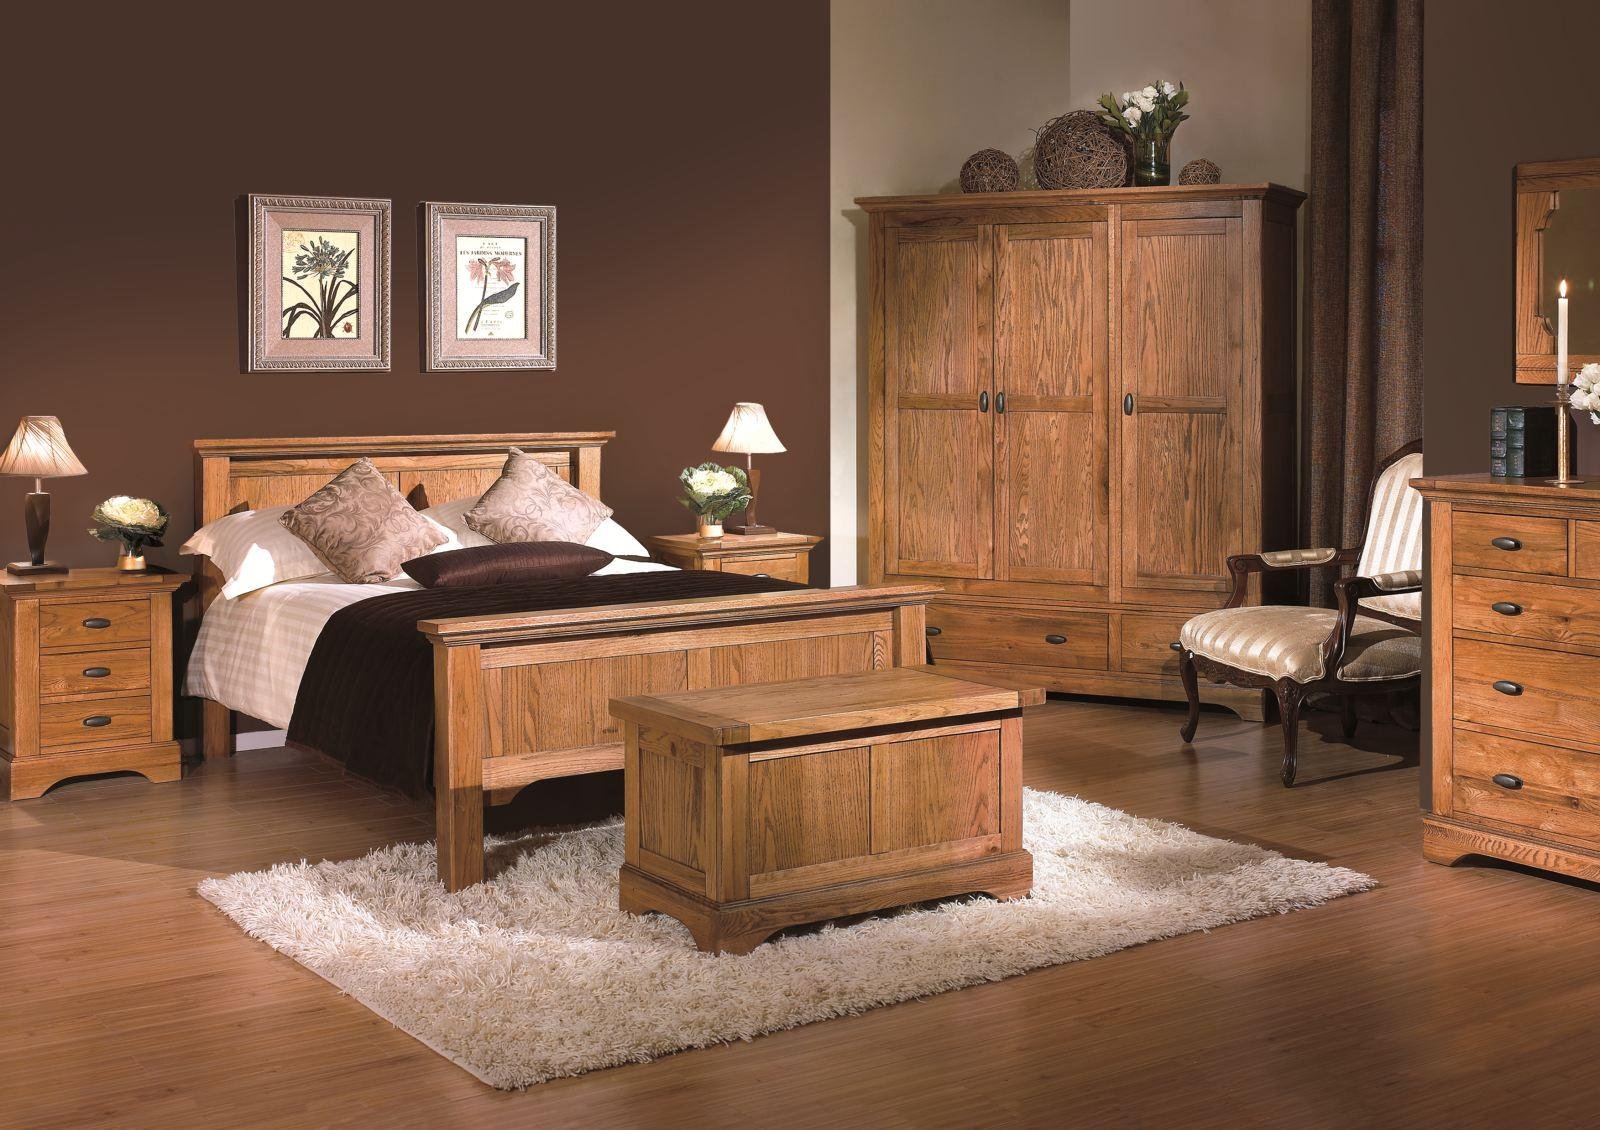 Wooden мебель. Кровать "Паула".массив дуба. Спальни из массива дерева. Комната с деревянной мебелью. Спальня с деревянной мебелью.